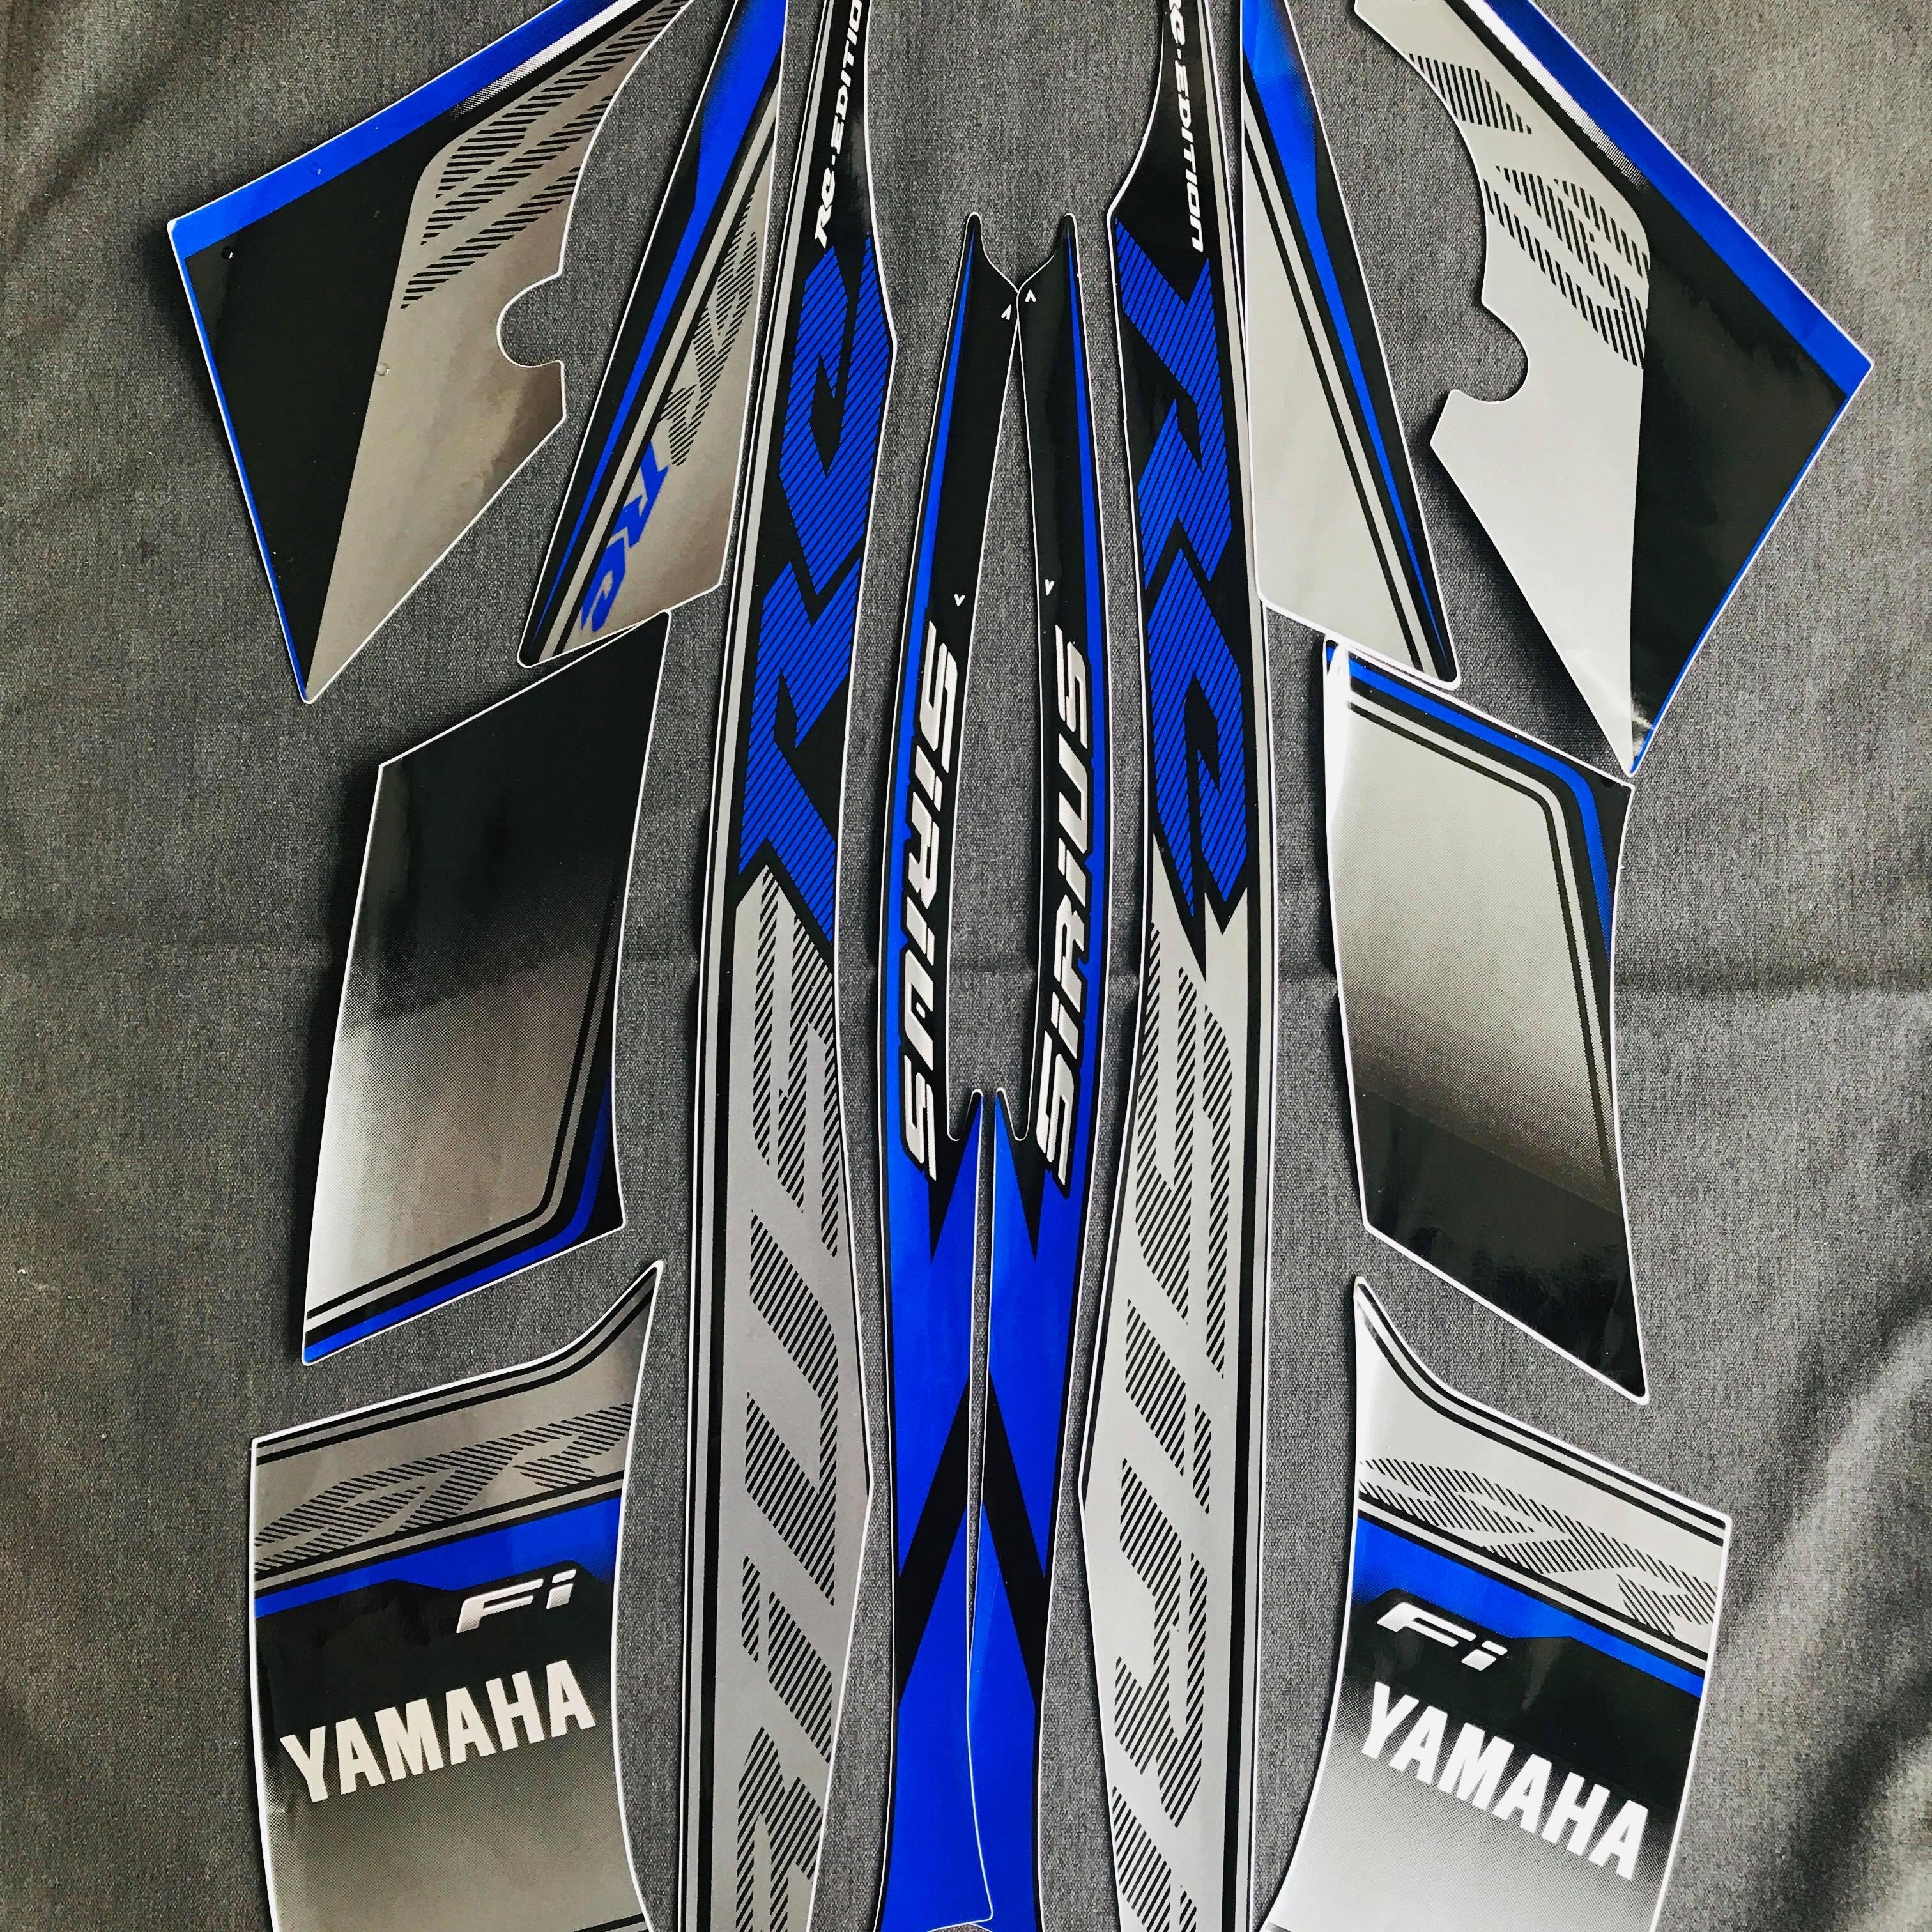 Đánh giá nhanh Yamaha Sirius RC Fi 2014 xe nhẹ dễ lái và ít hao xăng